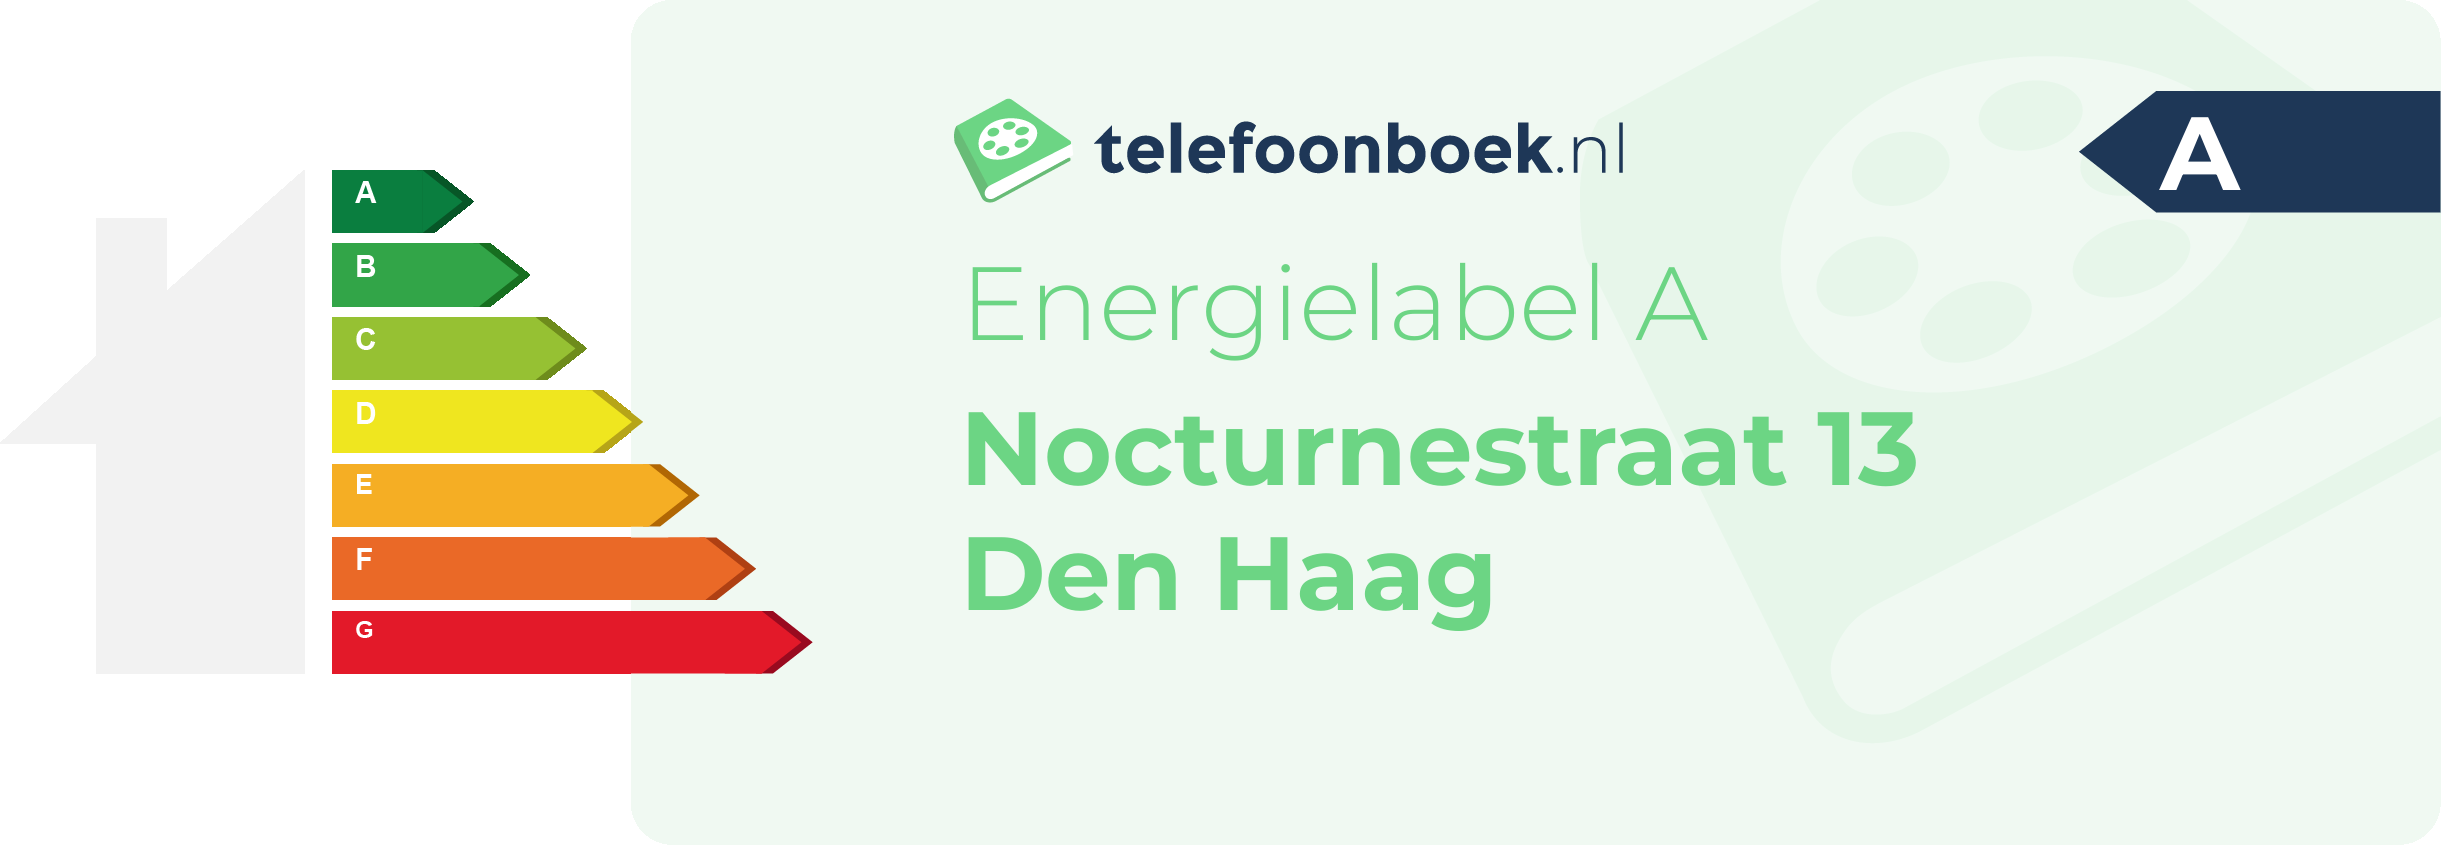 Energielabel Nocturnestraat 13 Den Haag